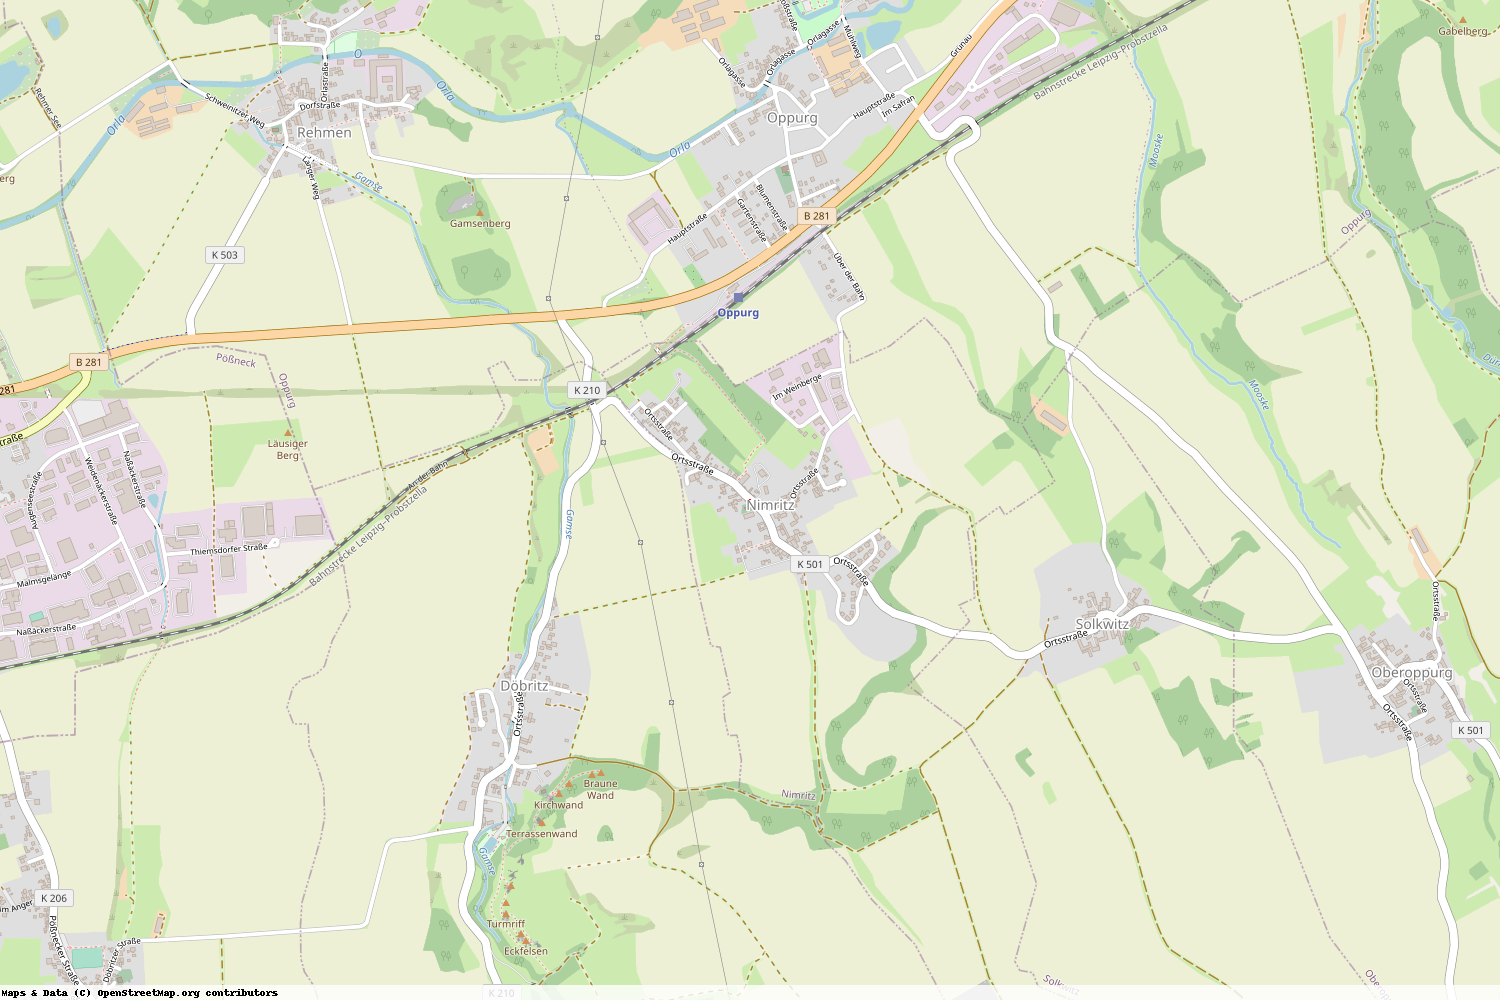 Ist gerade Stromausfall in Thüringen - Saale-Orla-Kreis - Nimritz?